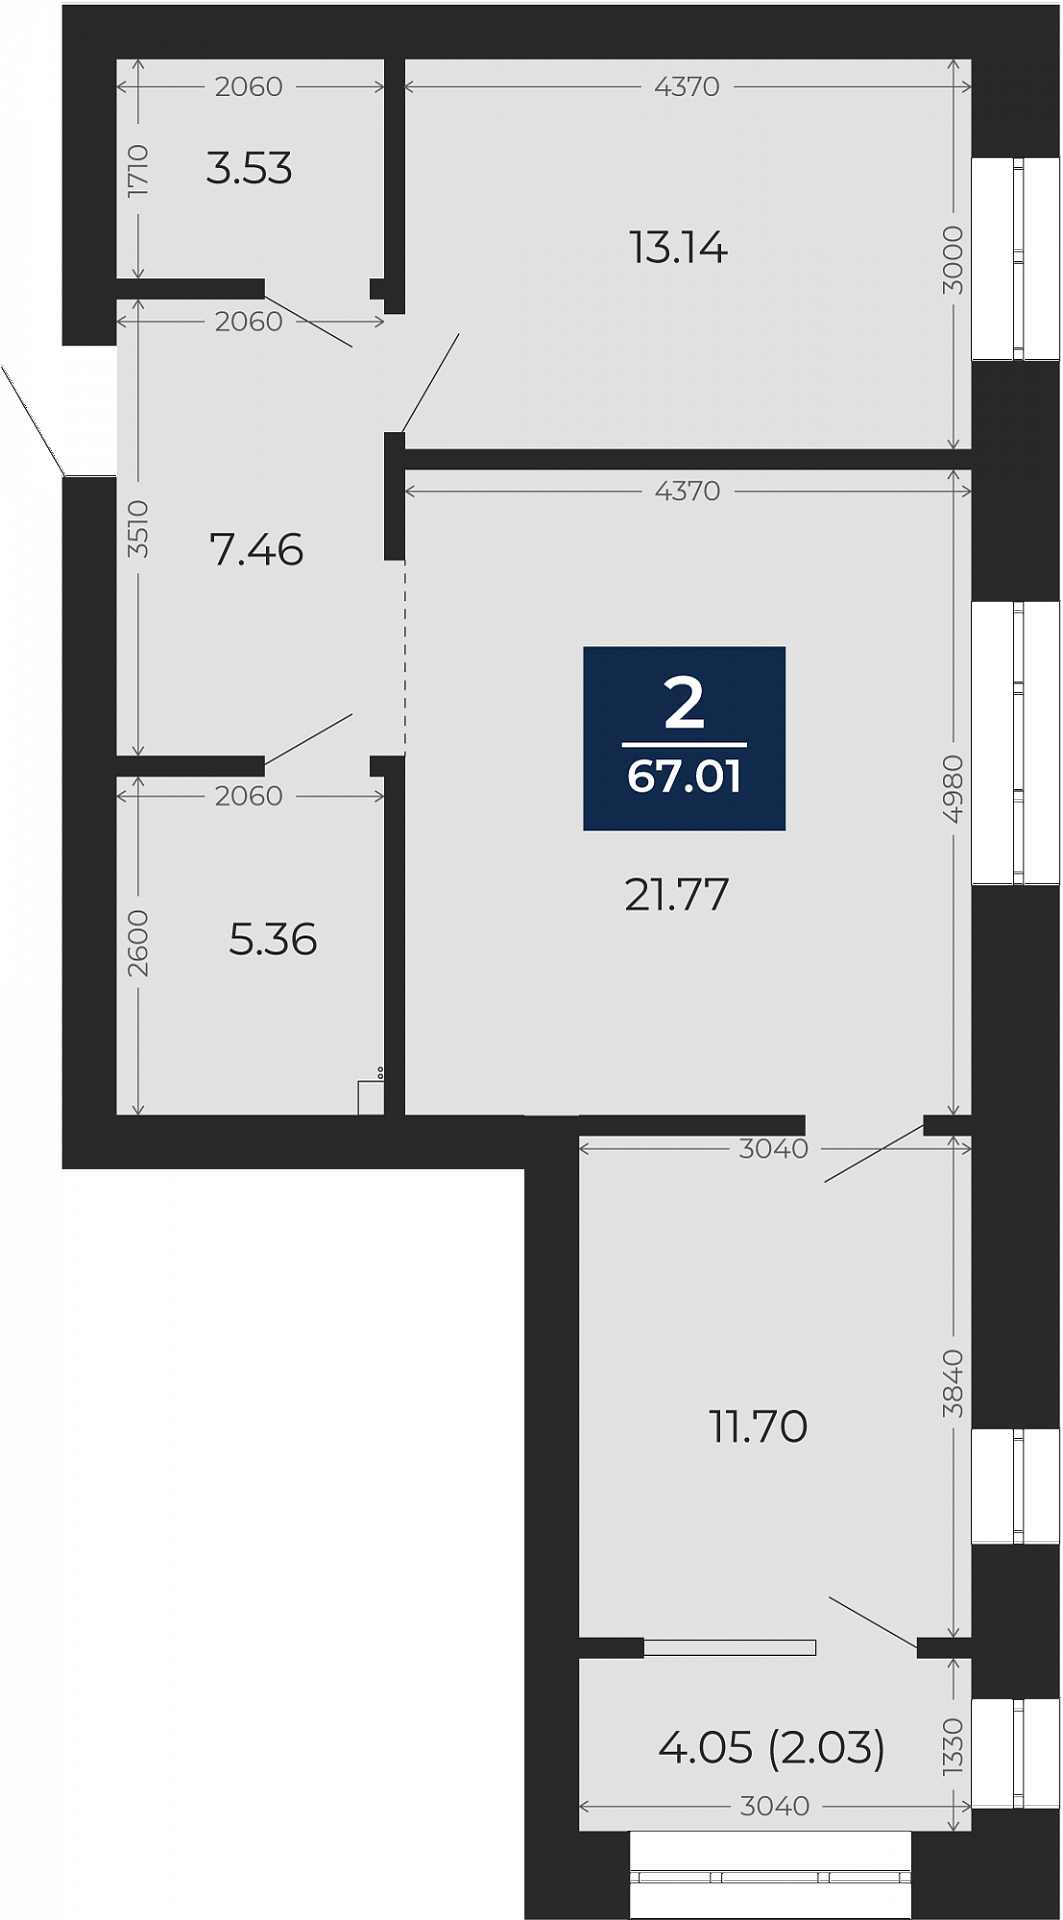 Квартира № 152, 2-комнатная, 67.01 кв. м, 6 этаж